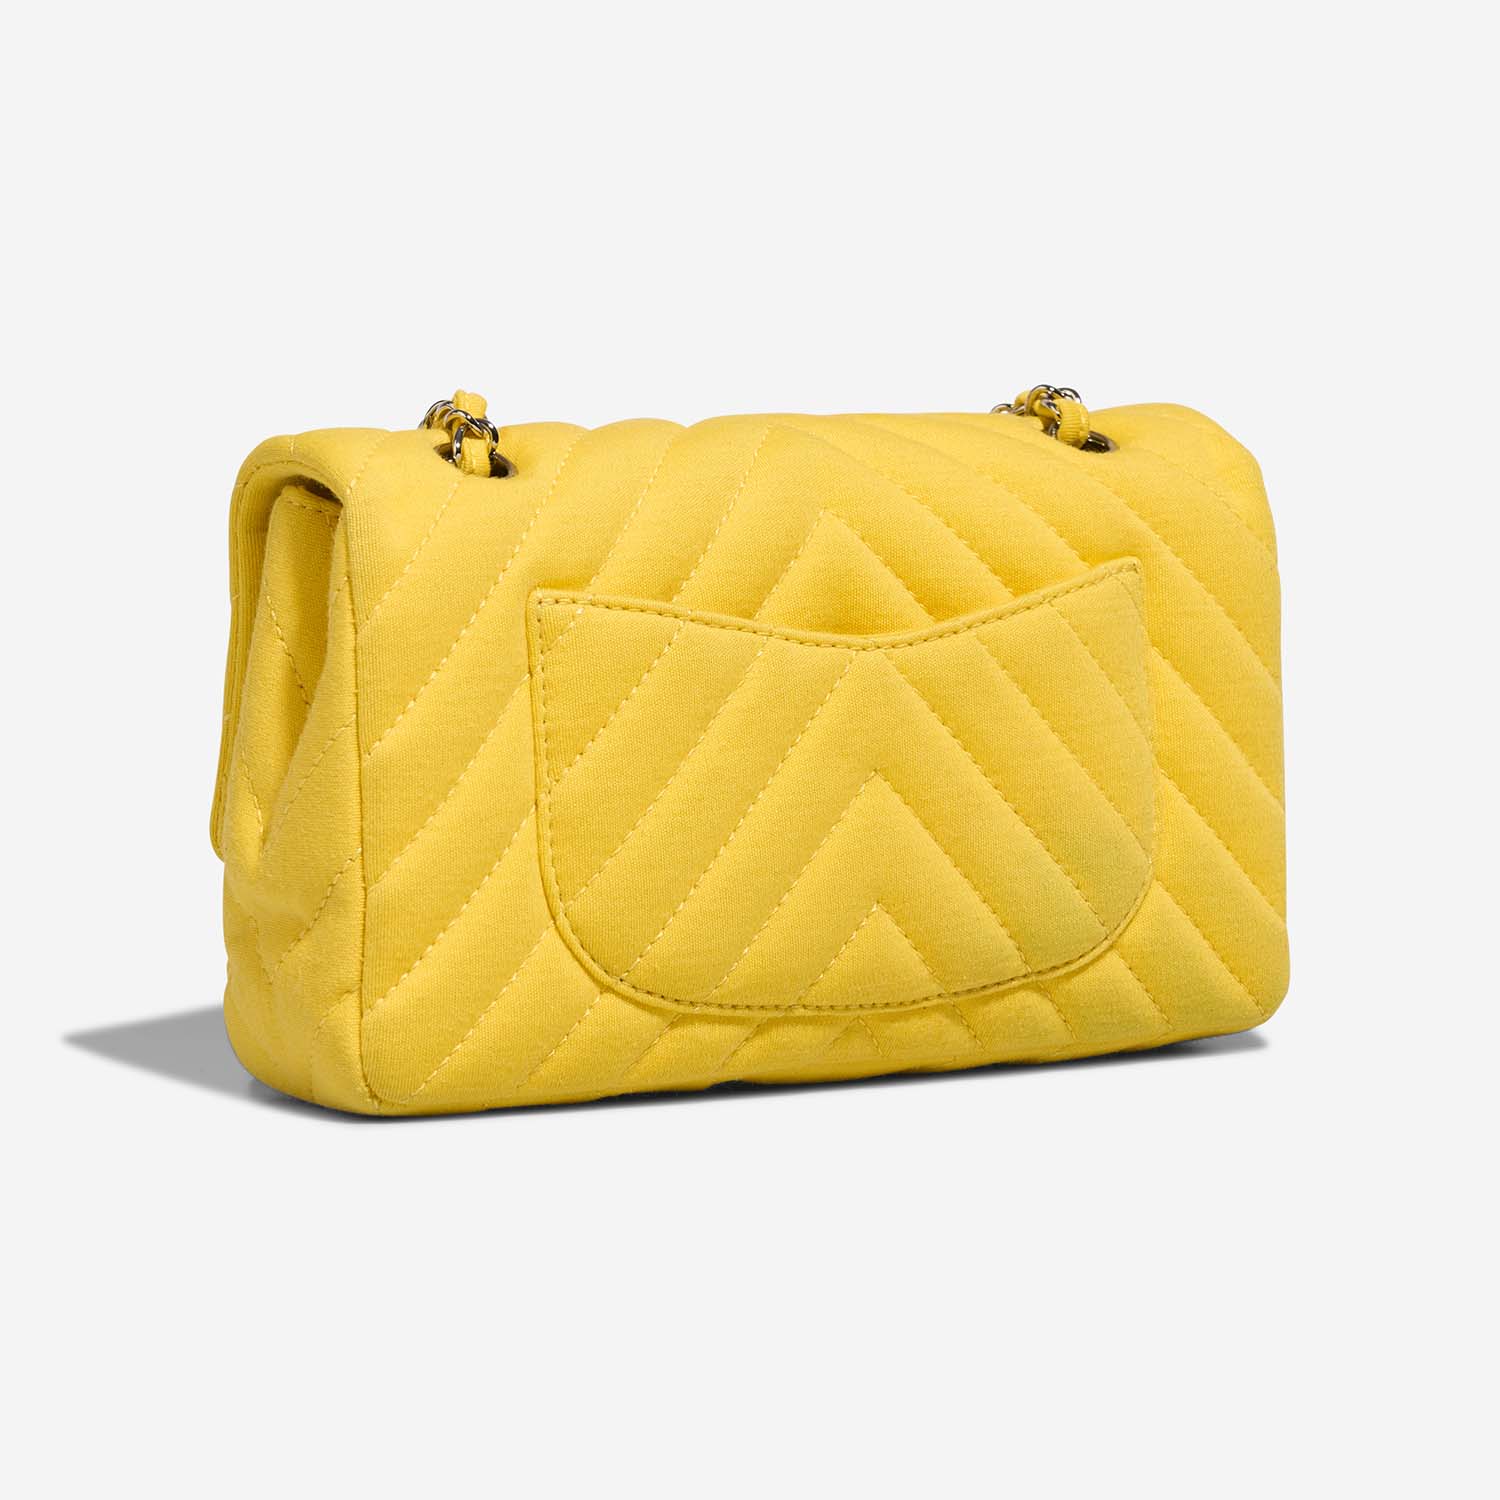 Chanel Timeless Medium Yellow Side Back | Verkaufen Sie Ihre Designer-Tasche auf Saclab.com